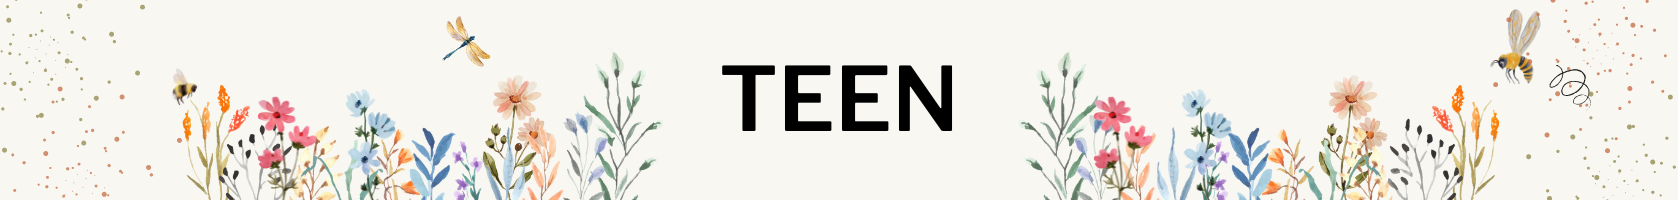 Teen Header Image